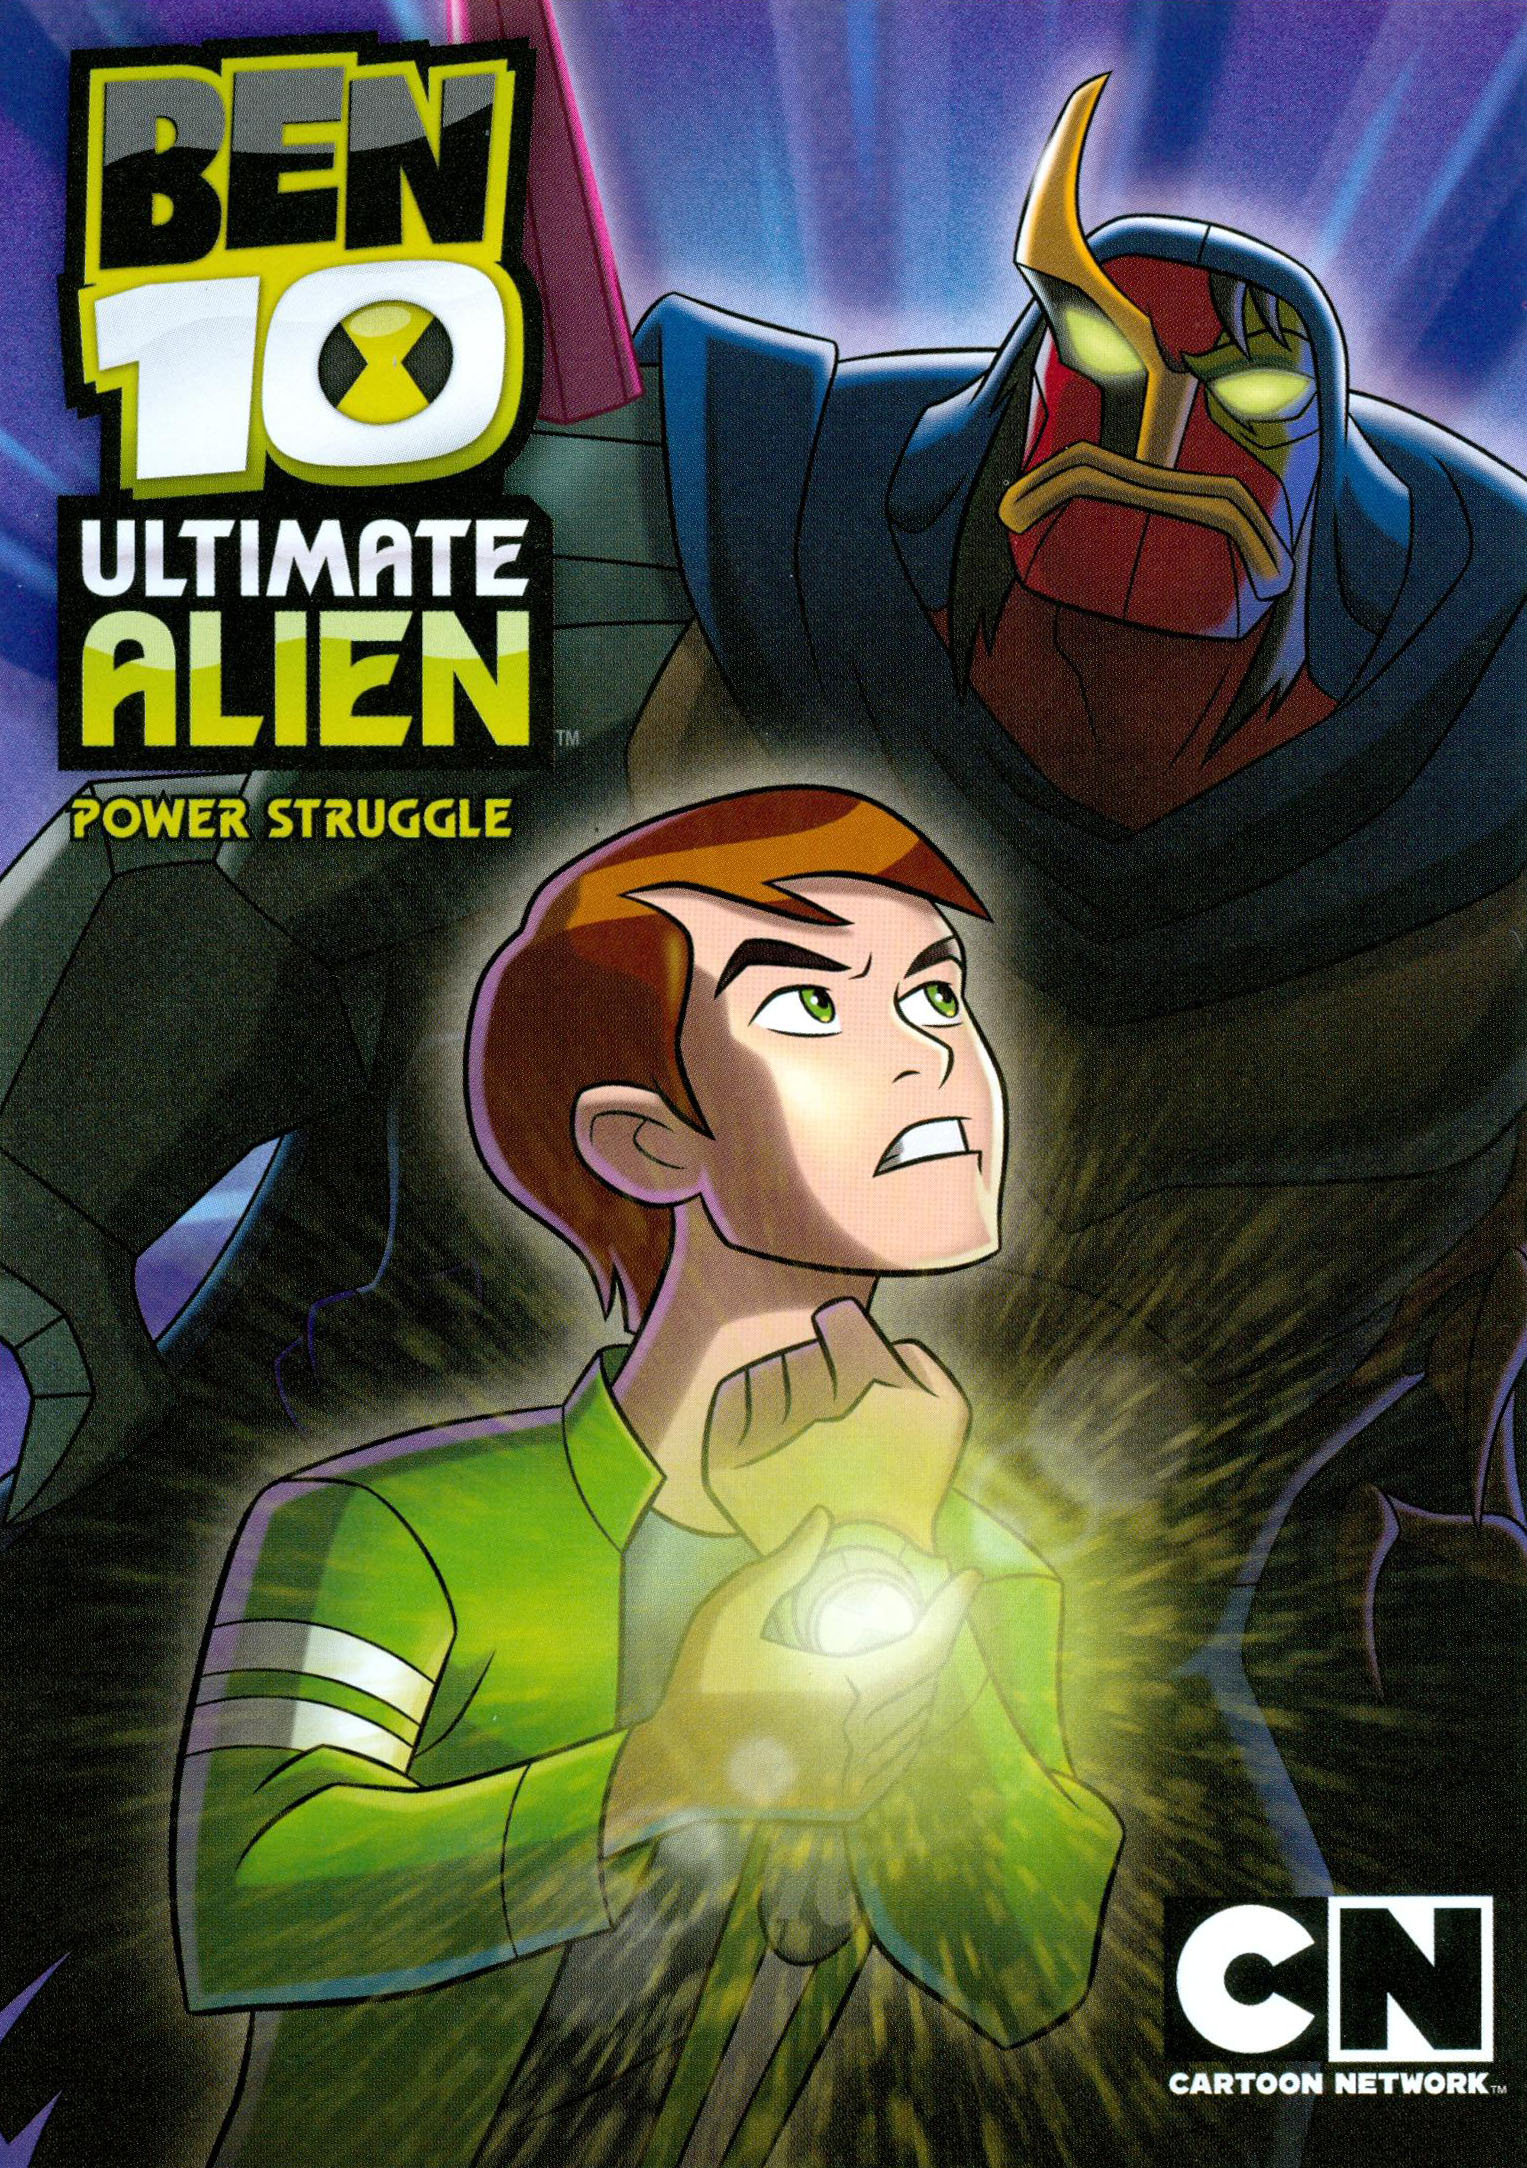 Ben 10: Ultimate Alien The Return of Heatblast [2 Discs] - Best Buy